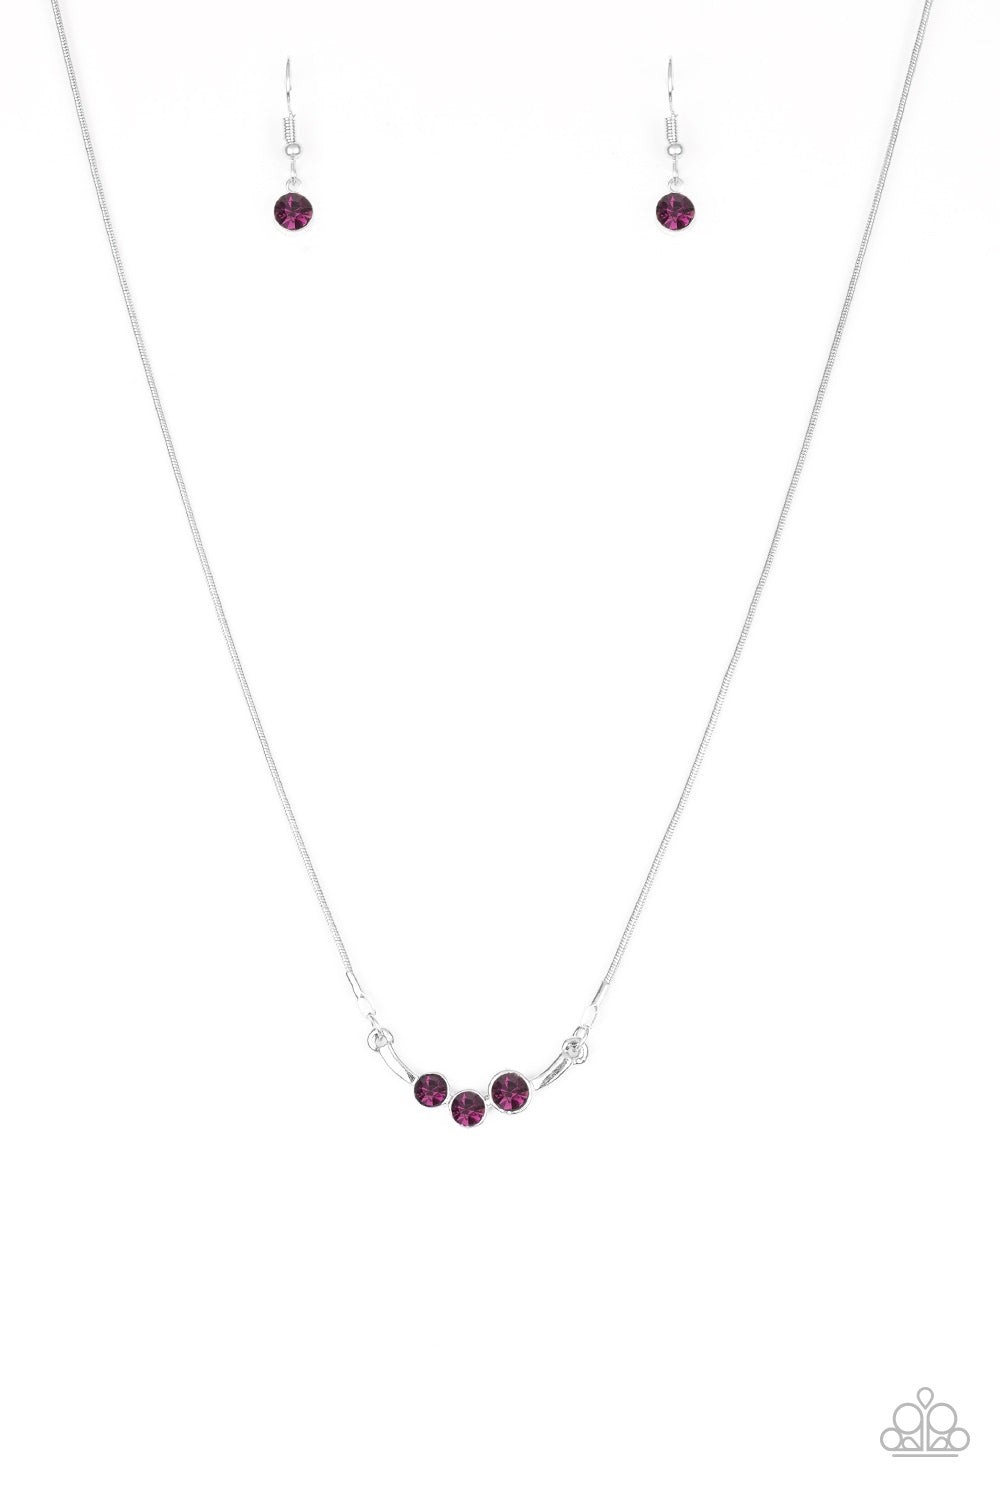 Sparkling Stargazer Purple Necklace Paparazzi Accessories $5 Jewelry. Free Shipping.#P2DA-PRXX-089XX